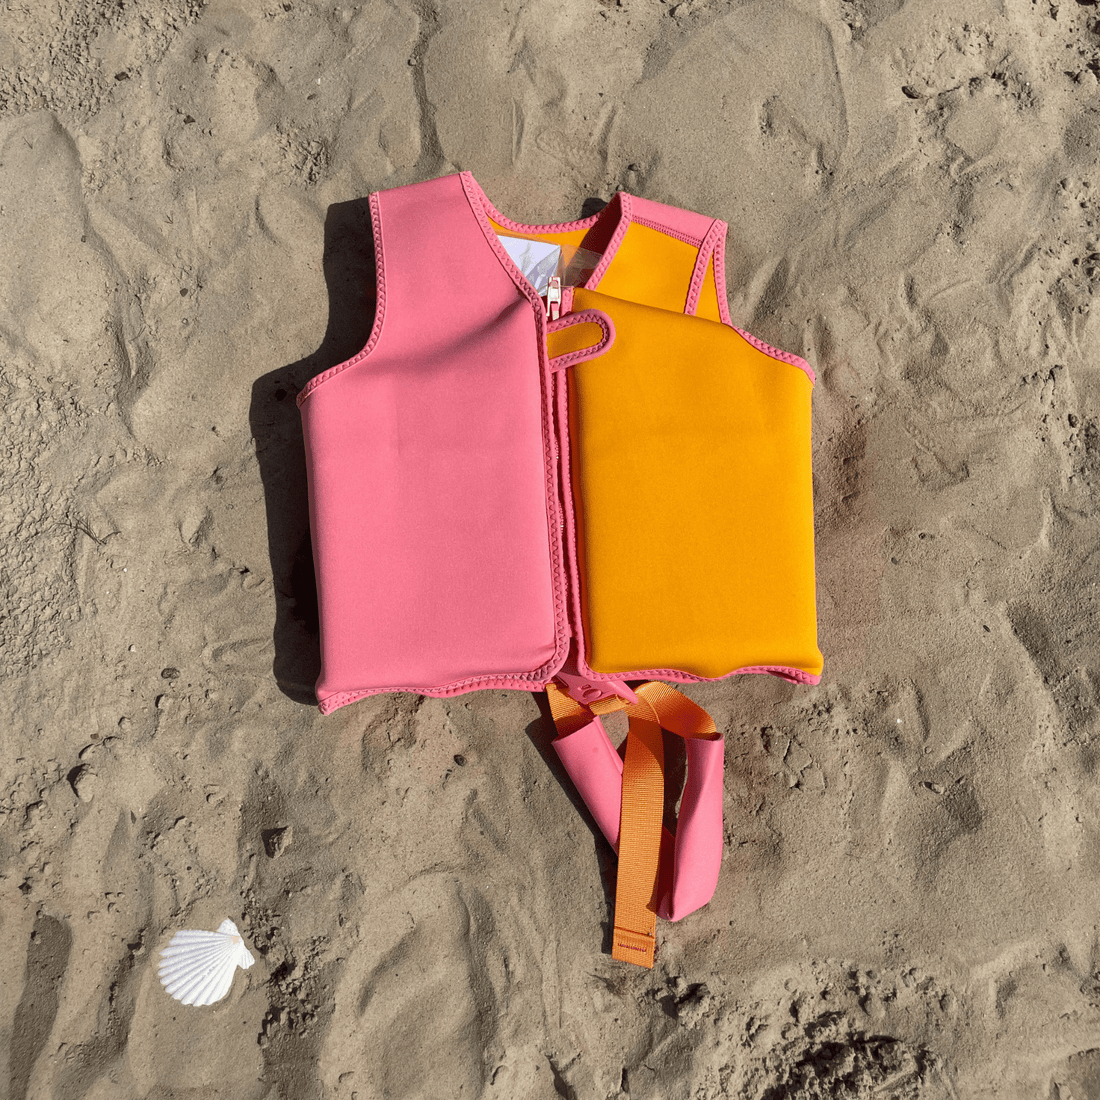 zwemvest-oranje-roze-3-6-jaar-swim-essentials-1